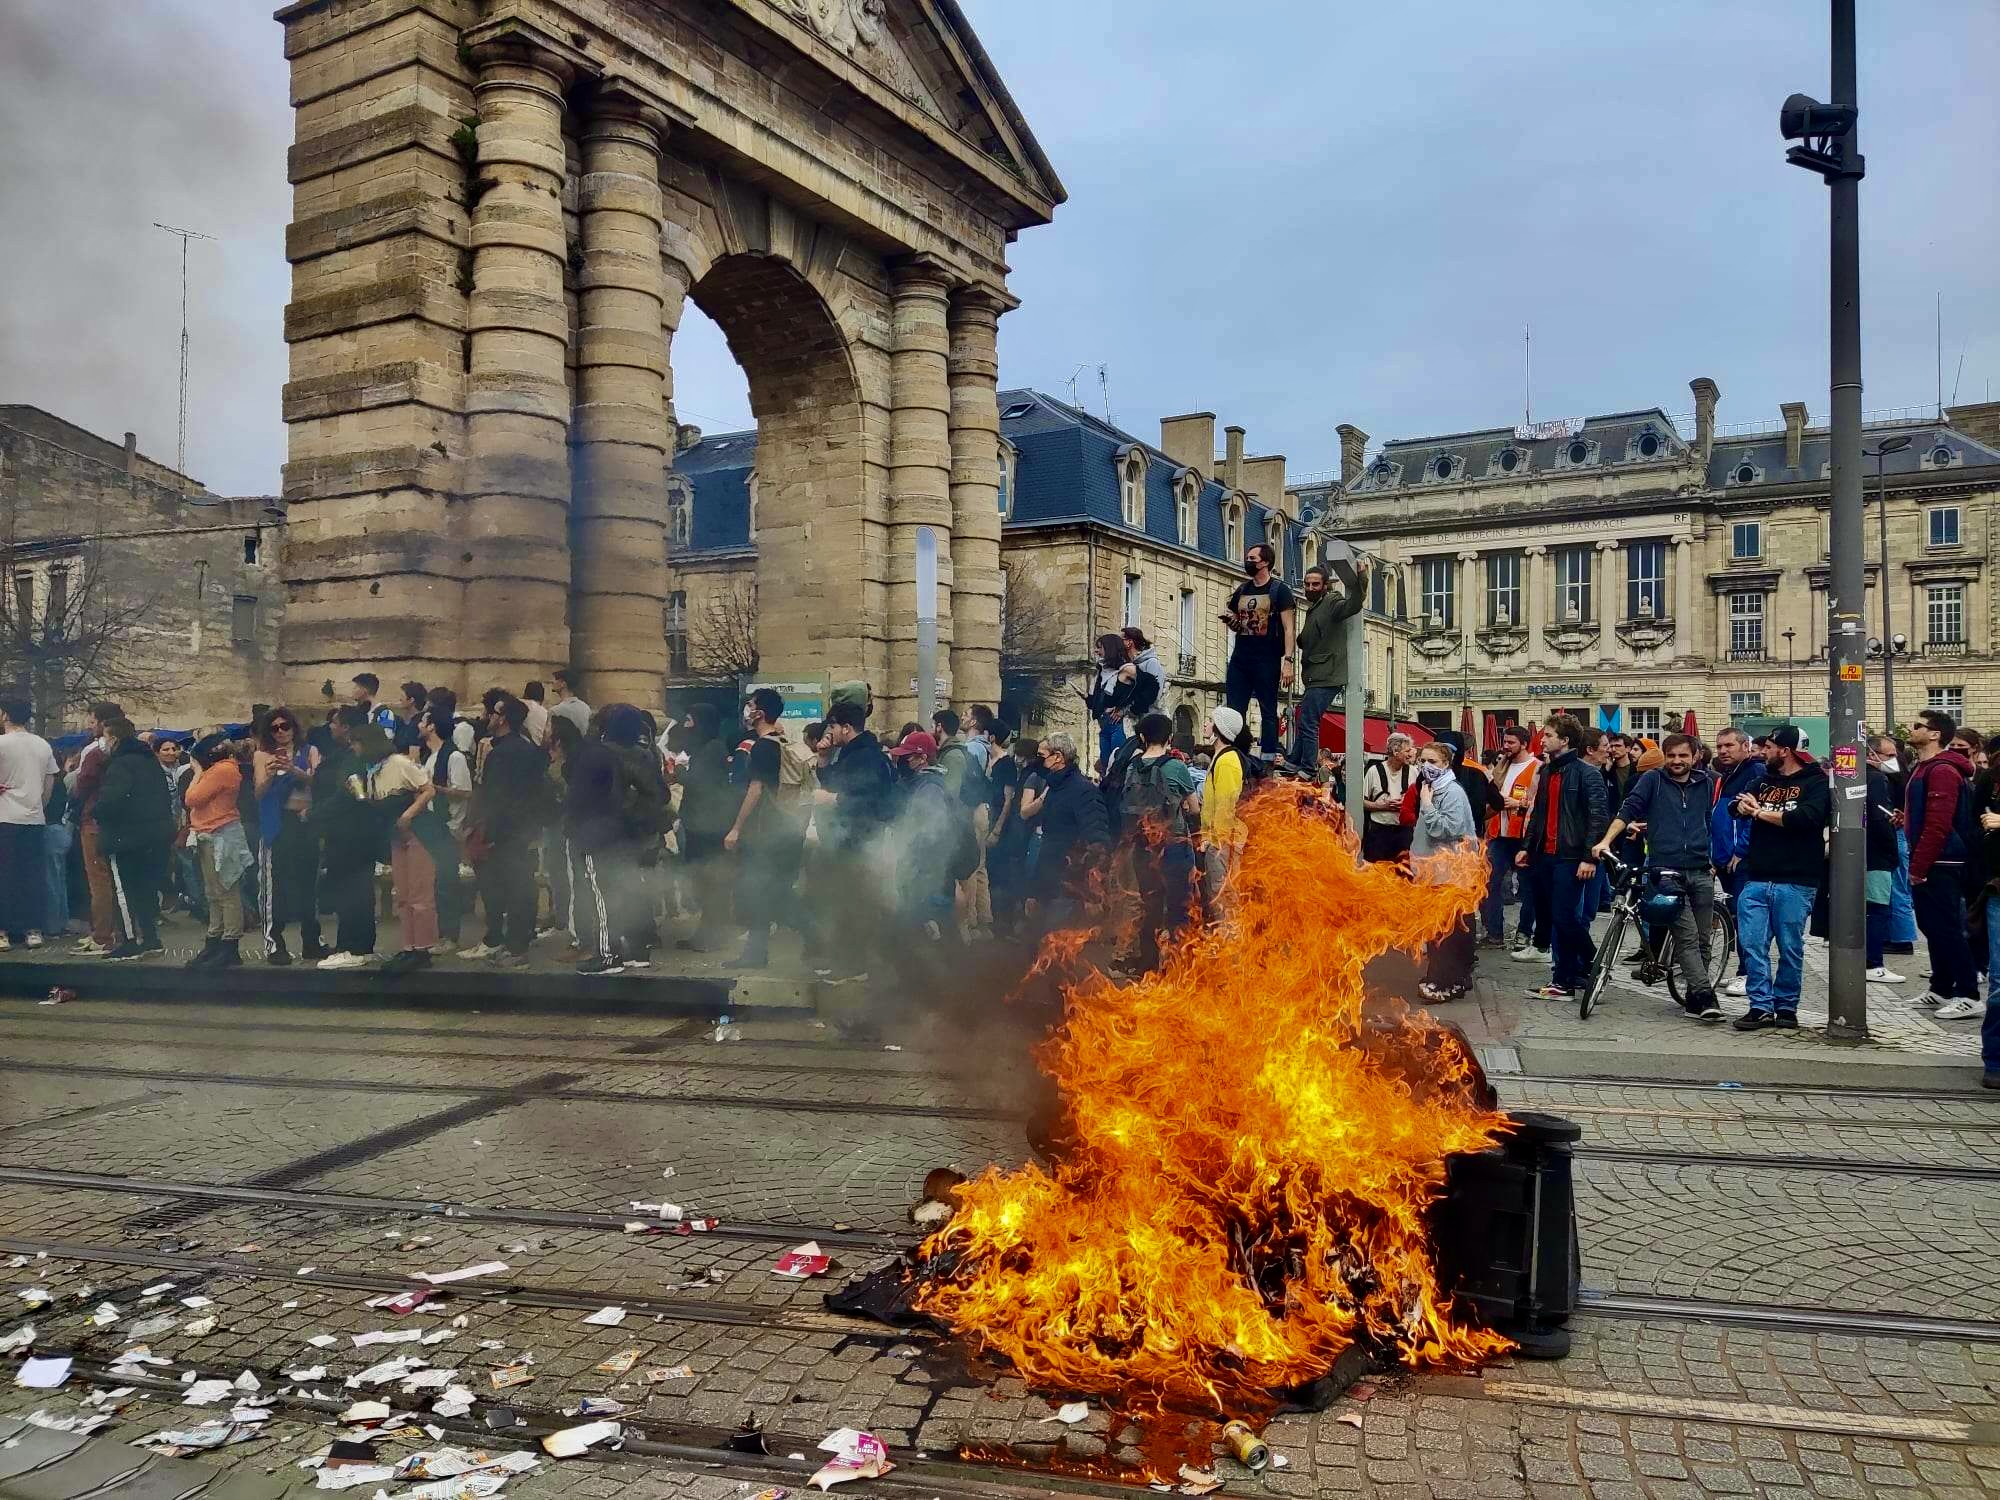 Réforme des retraites : relaxe d’un manifestant interpellé à Bordeaux